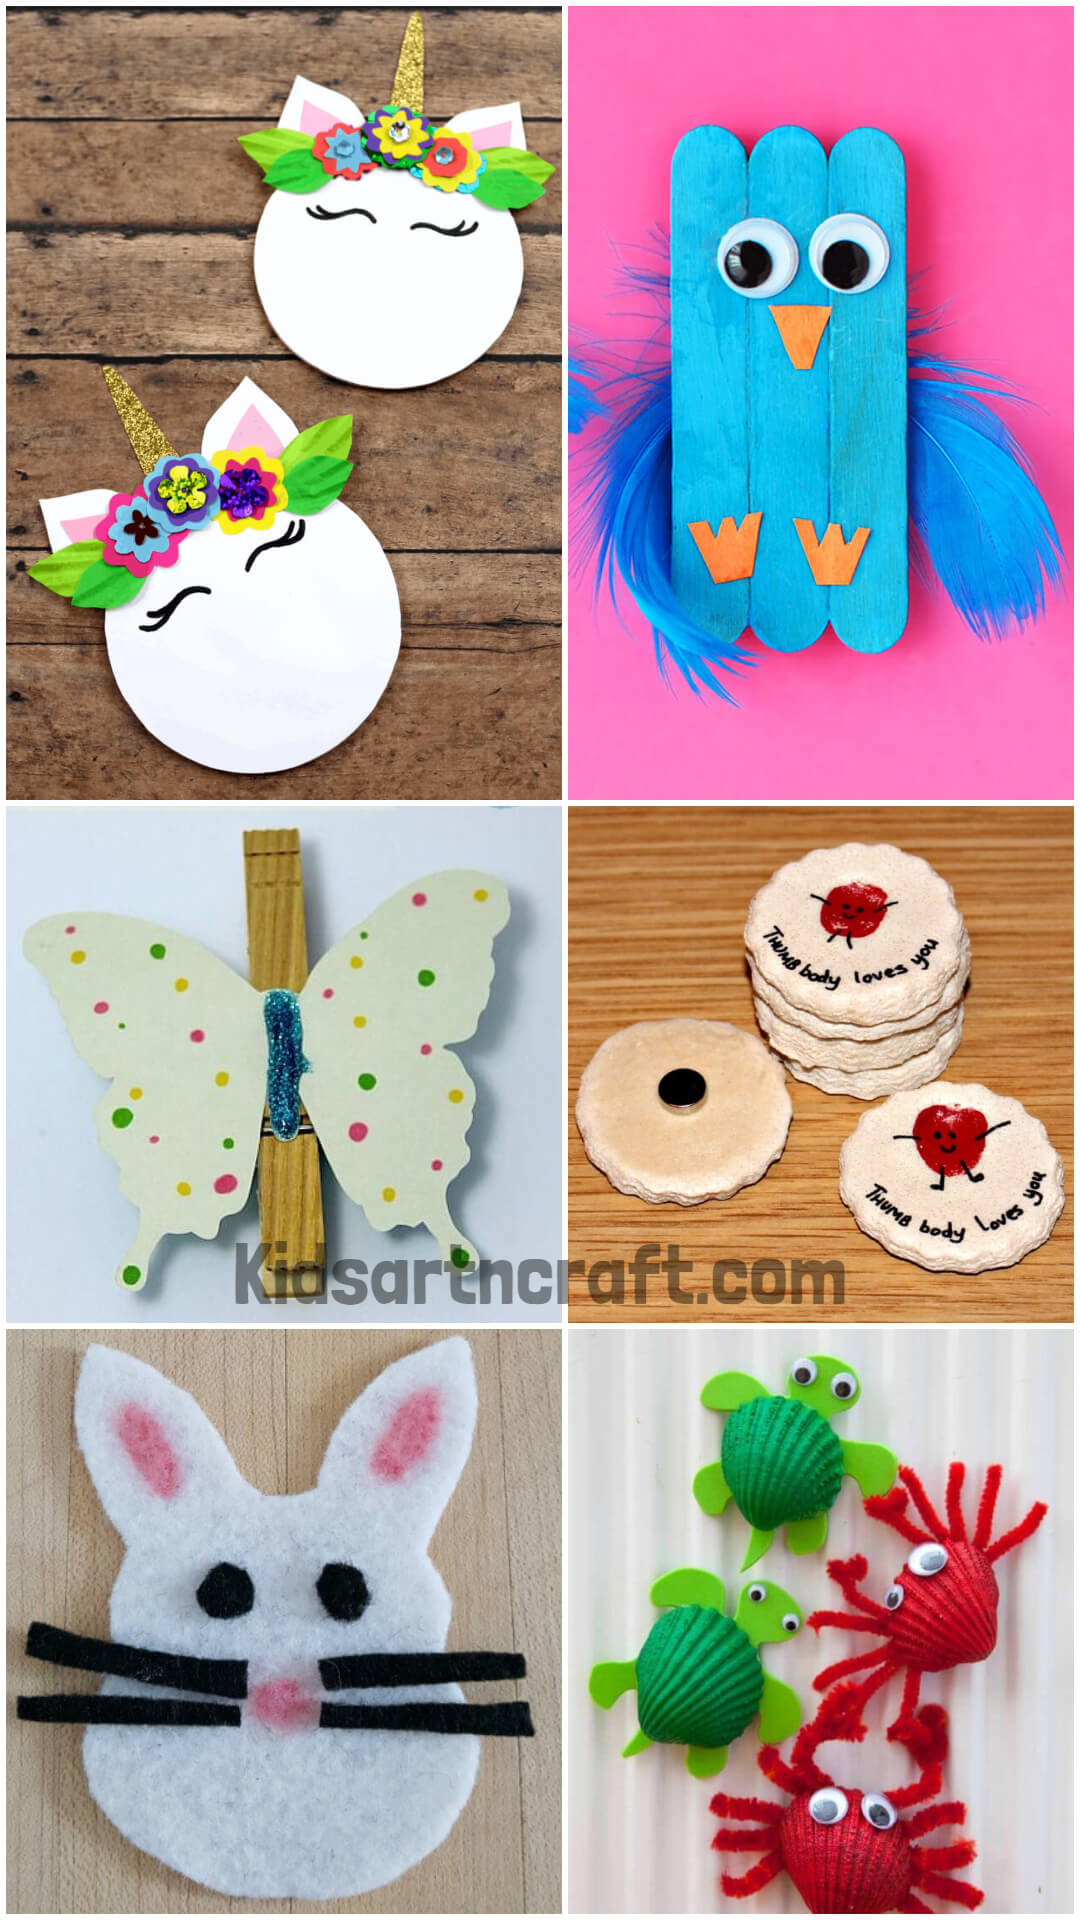 Magnet Crafts for Preschool Amazing Magnet Crafts & Activities Idea For Preschoolers